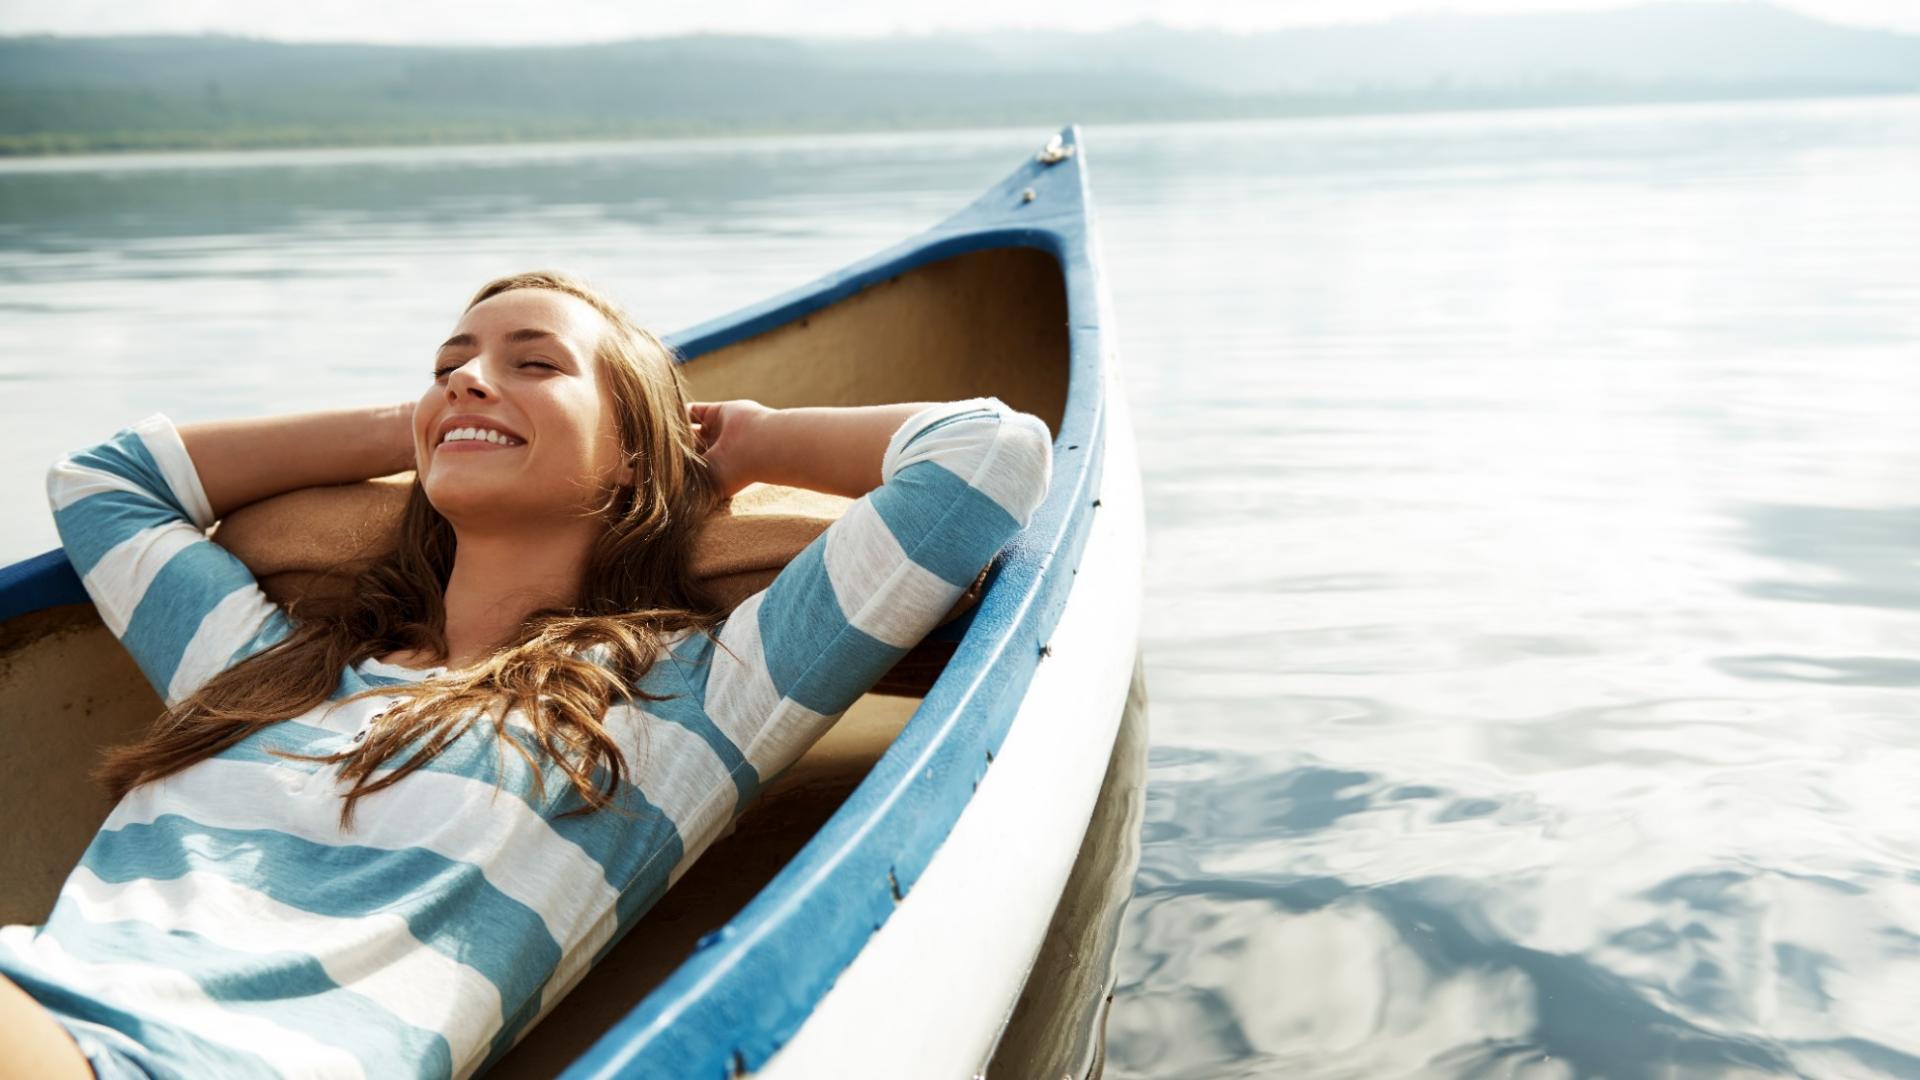 Eine glückliche, junge Frau liegt entspannt in einem kleinem Boot, das auf einem See schwimmt.